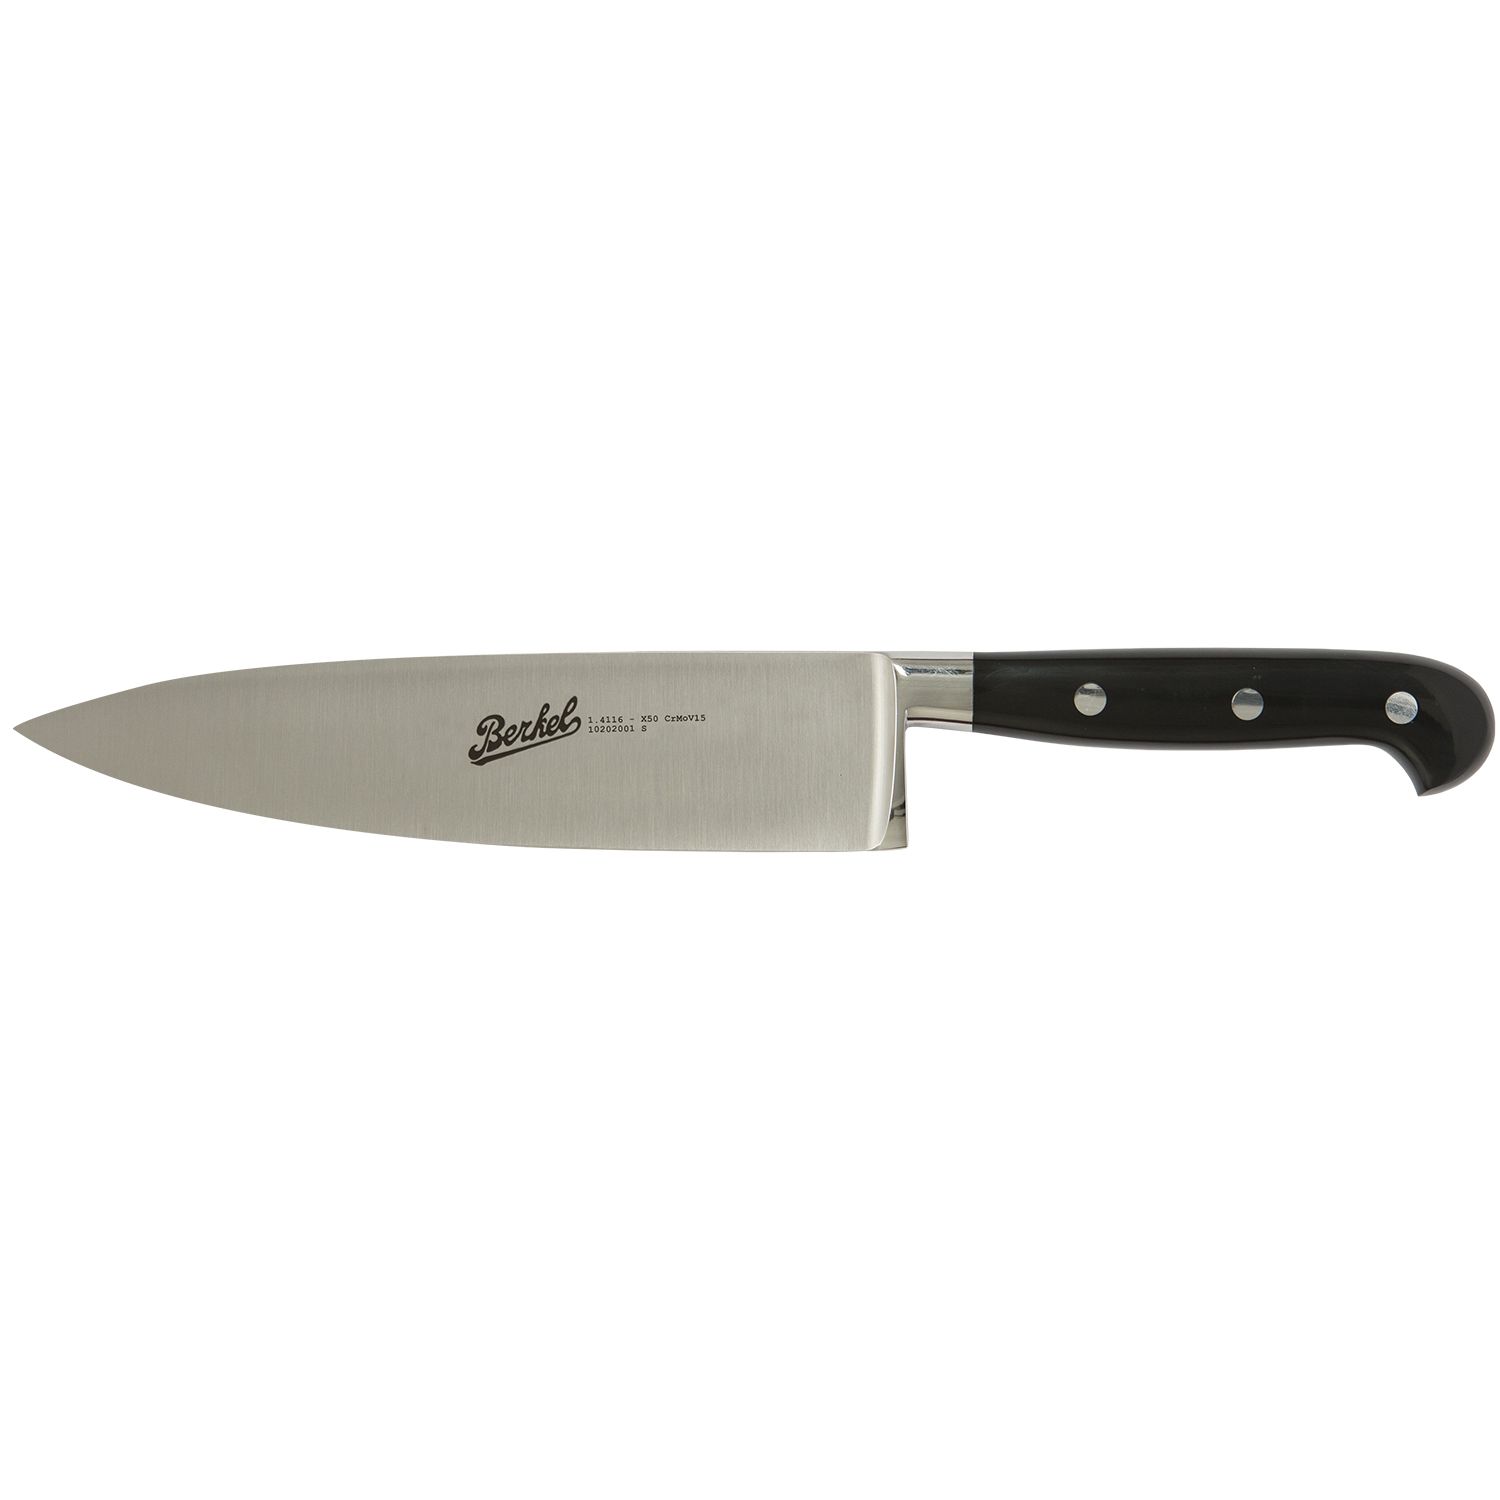 Cook's knife cm.20  Stainless Steel Berkel Adhoc Handle Glossy Black Resin